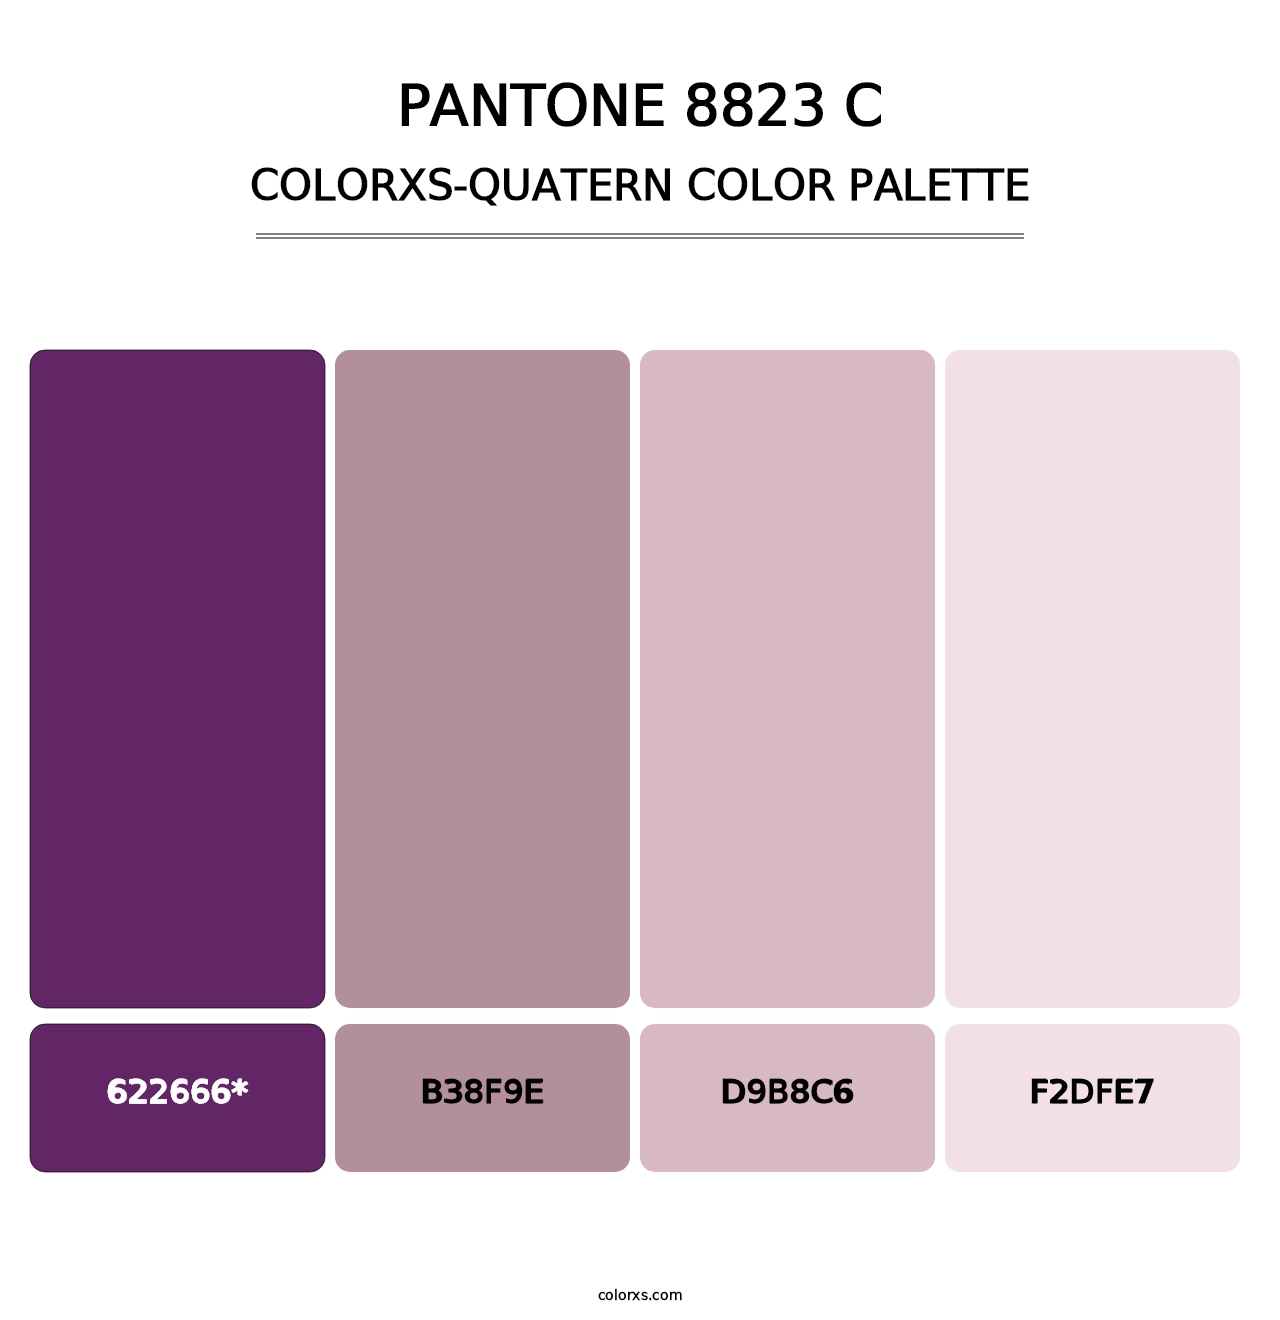 PANTONE 8823 C - Colorxs Quatern Palette